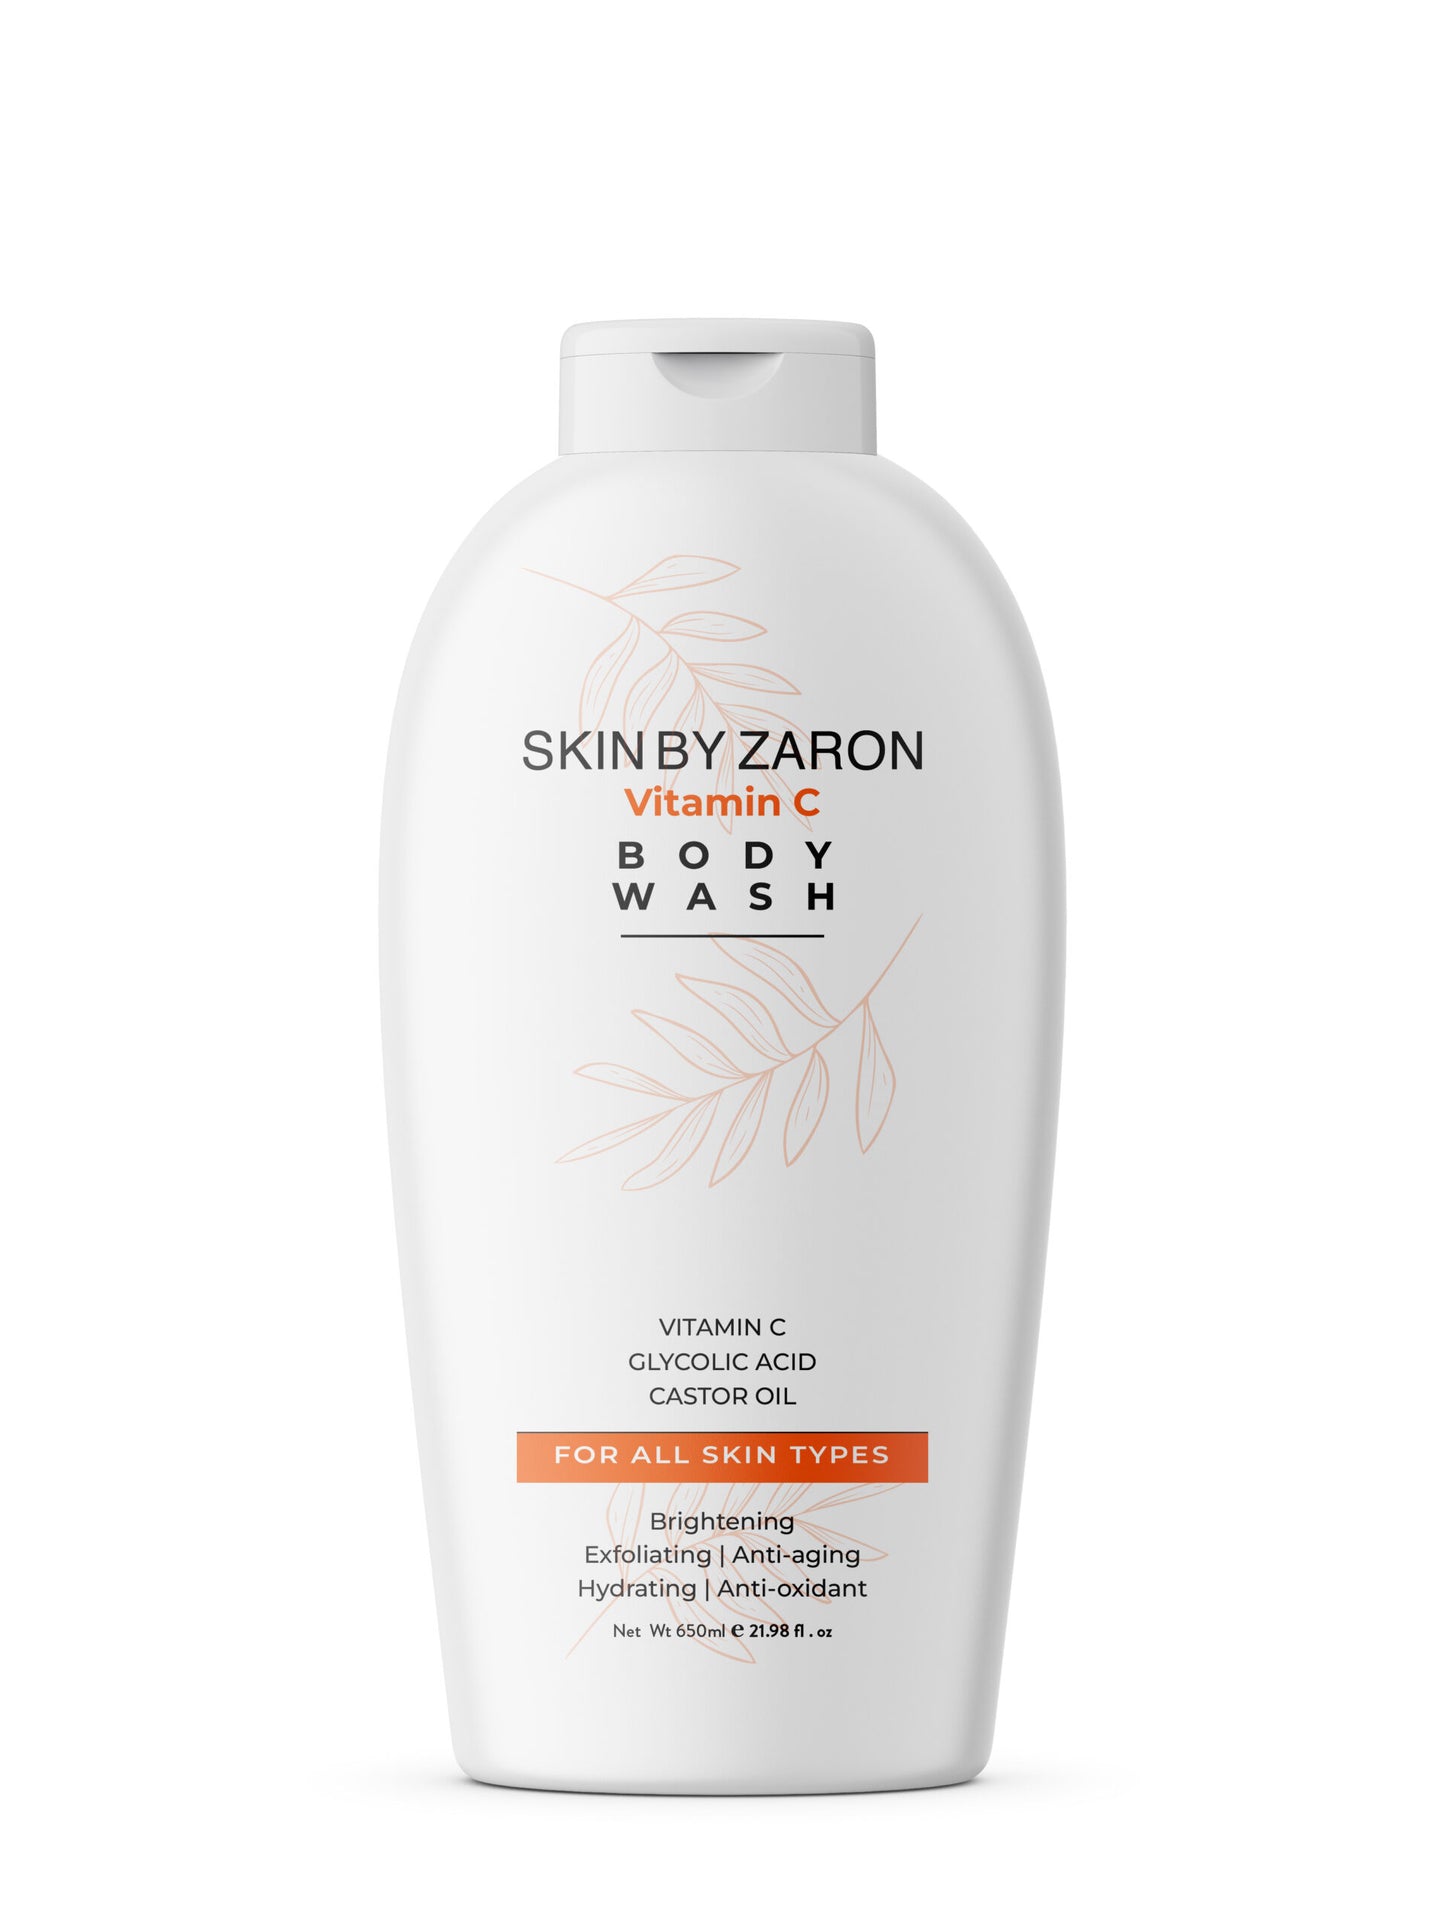 Skin by Zaron Vitamin C Body Wash